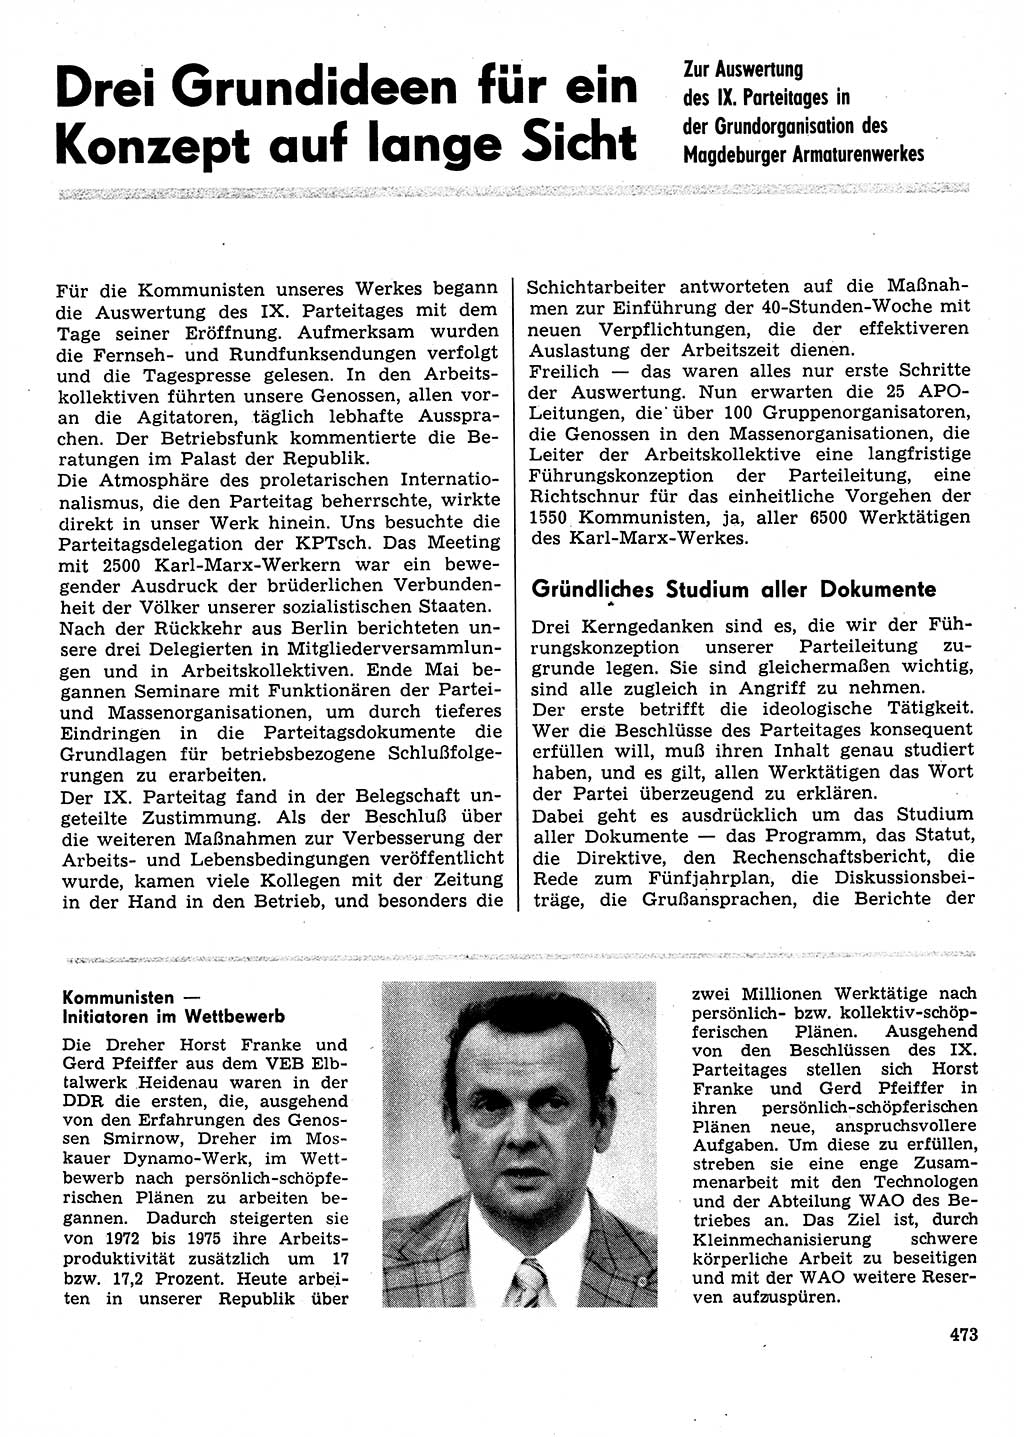 Neuer Weg (NW), Organ des Zentralkomitees (ZK) der SED (Sozialistische Einheitspartei Deutschlands) für Fragen des Parteilebens, 31. Jahrgang [Deutsche Demokratische Republik (DDR)] 1976, Seite 473 (NW ZK SED DDR 1976, S. 473)